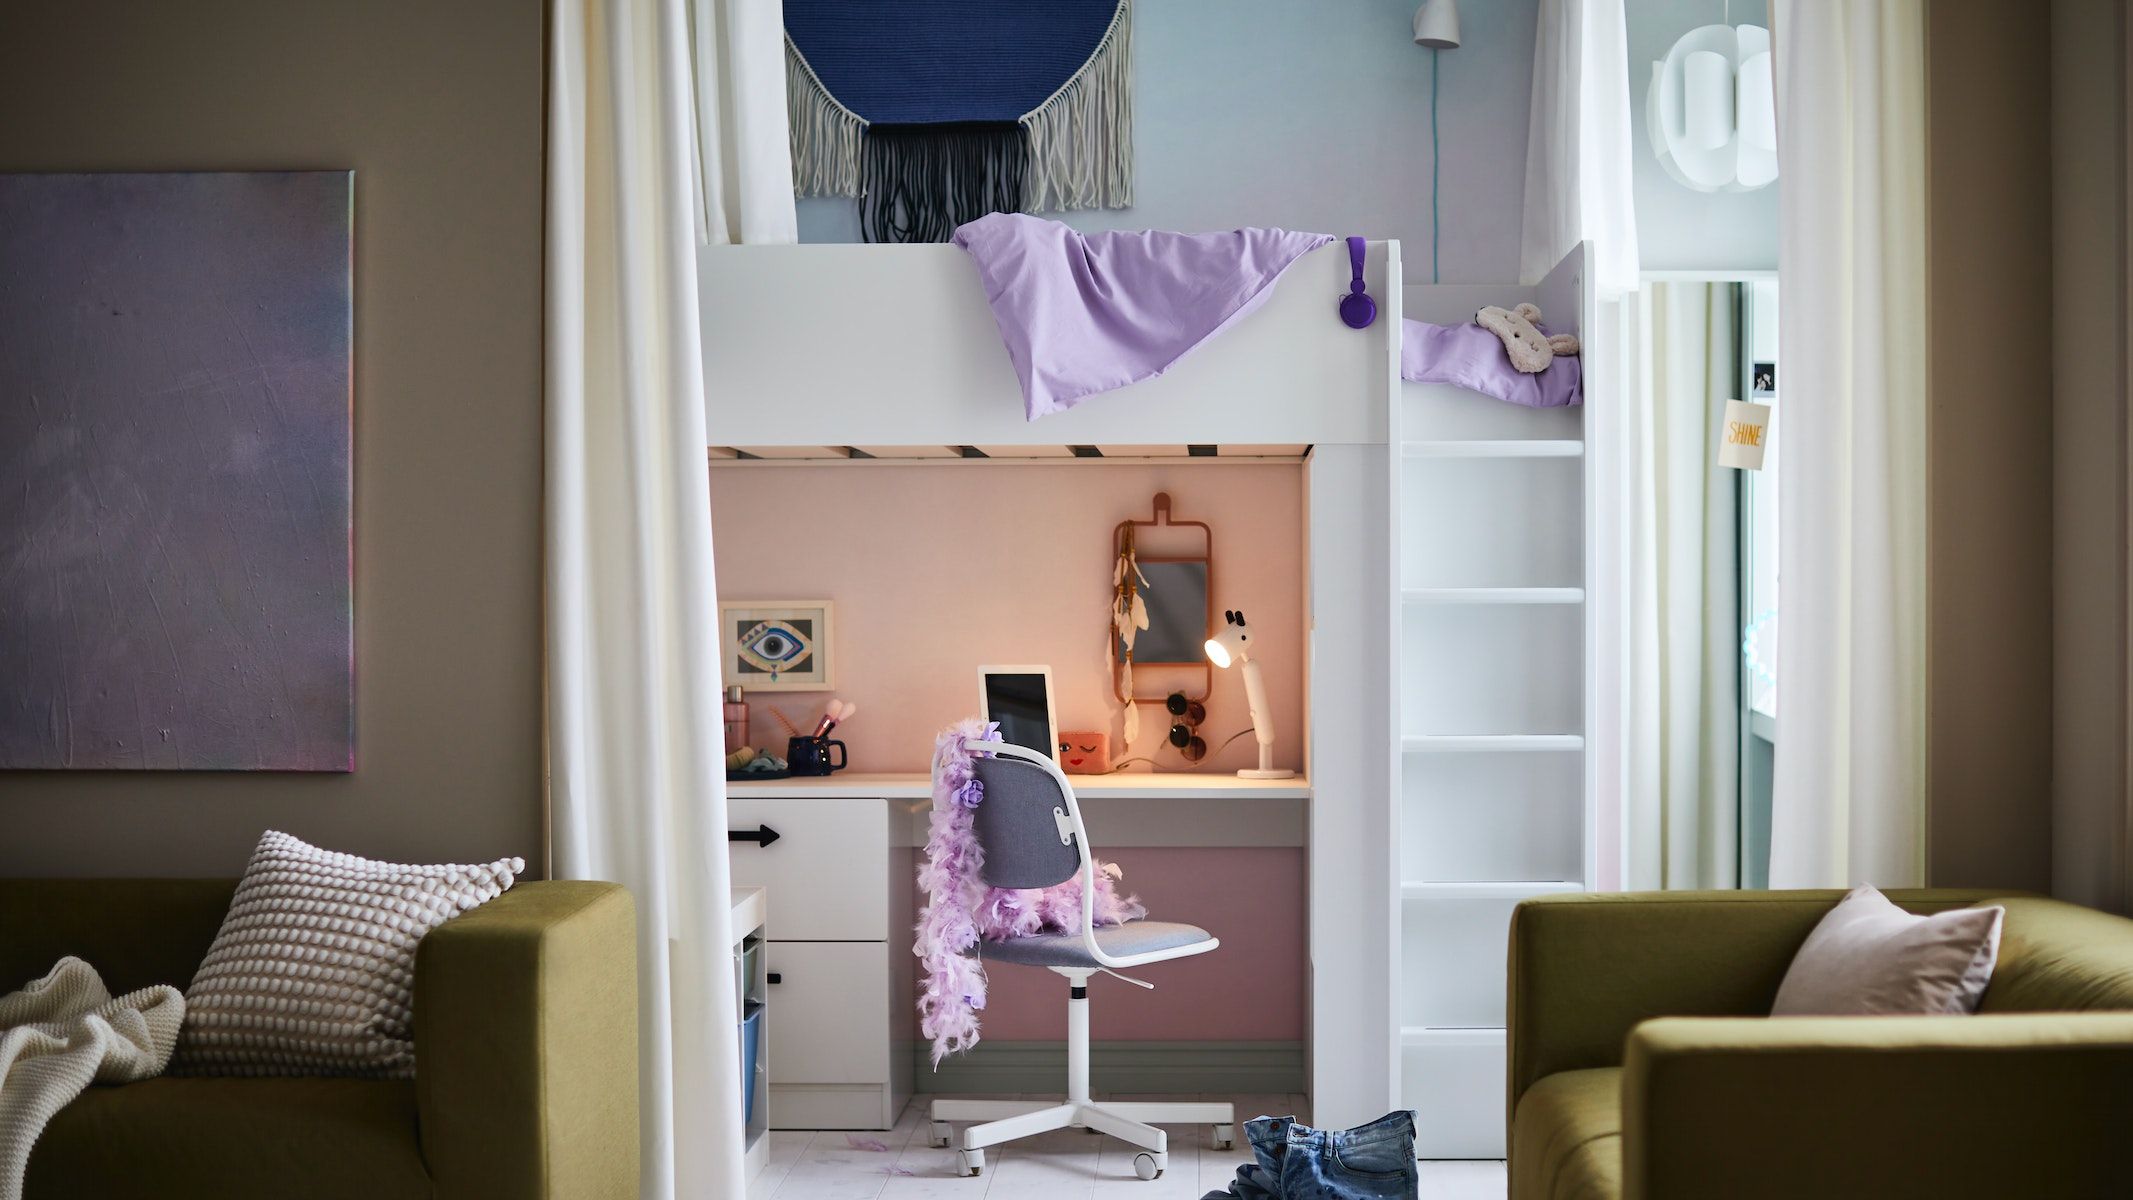 Μεταμορφώνοντας μικρούς χώρους σε μοντέρνα νεανικά υπνοδωμάτια με την IKEA!  | Ι LOVE STYLE